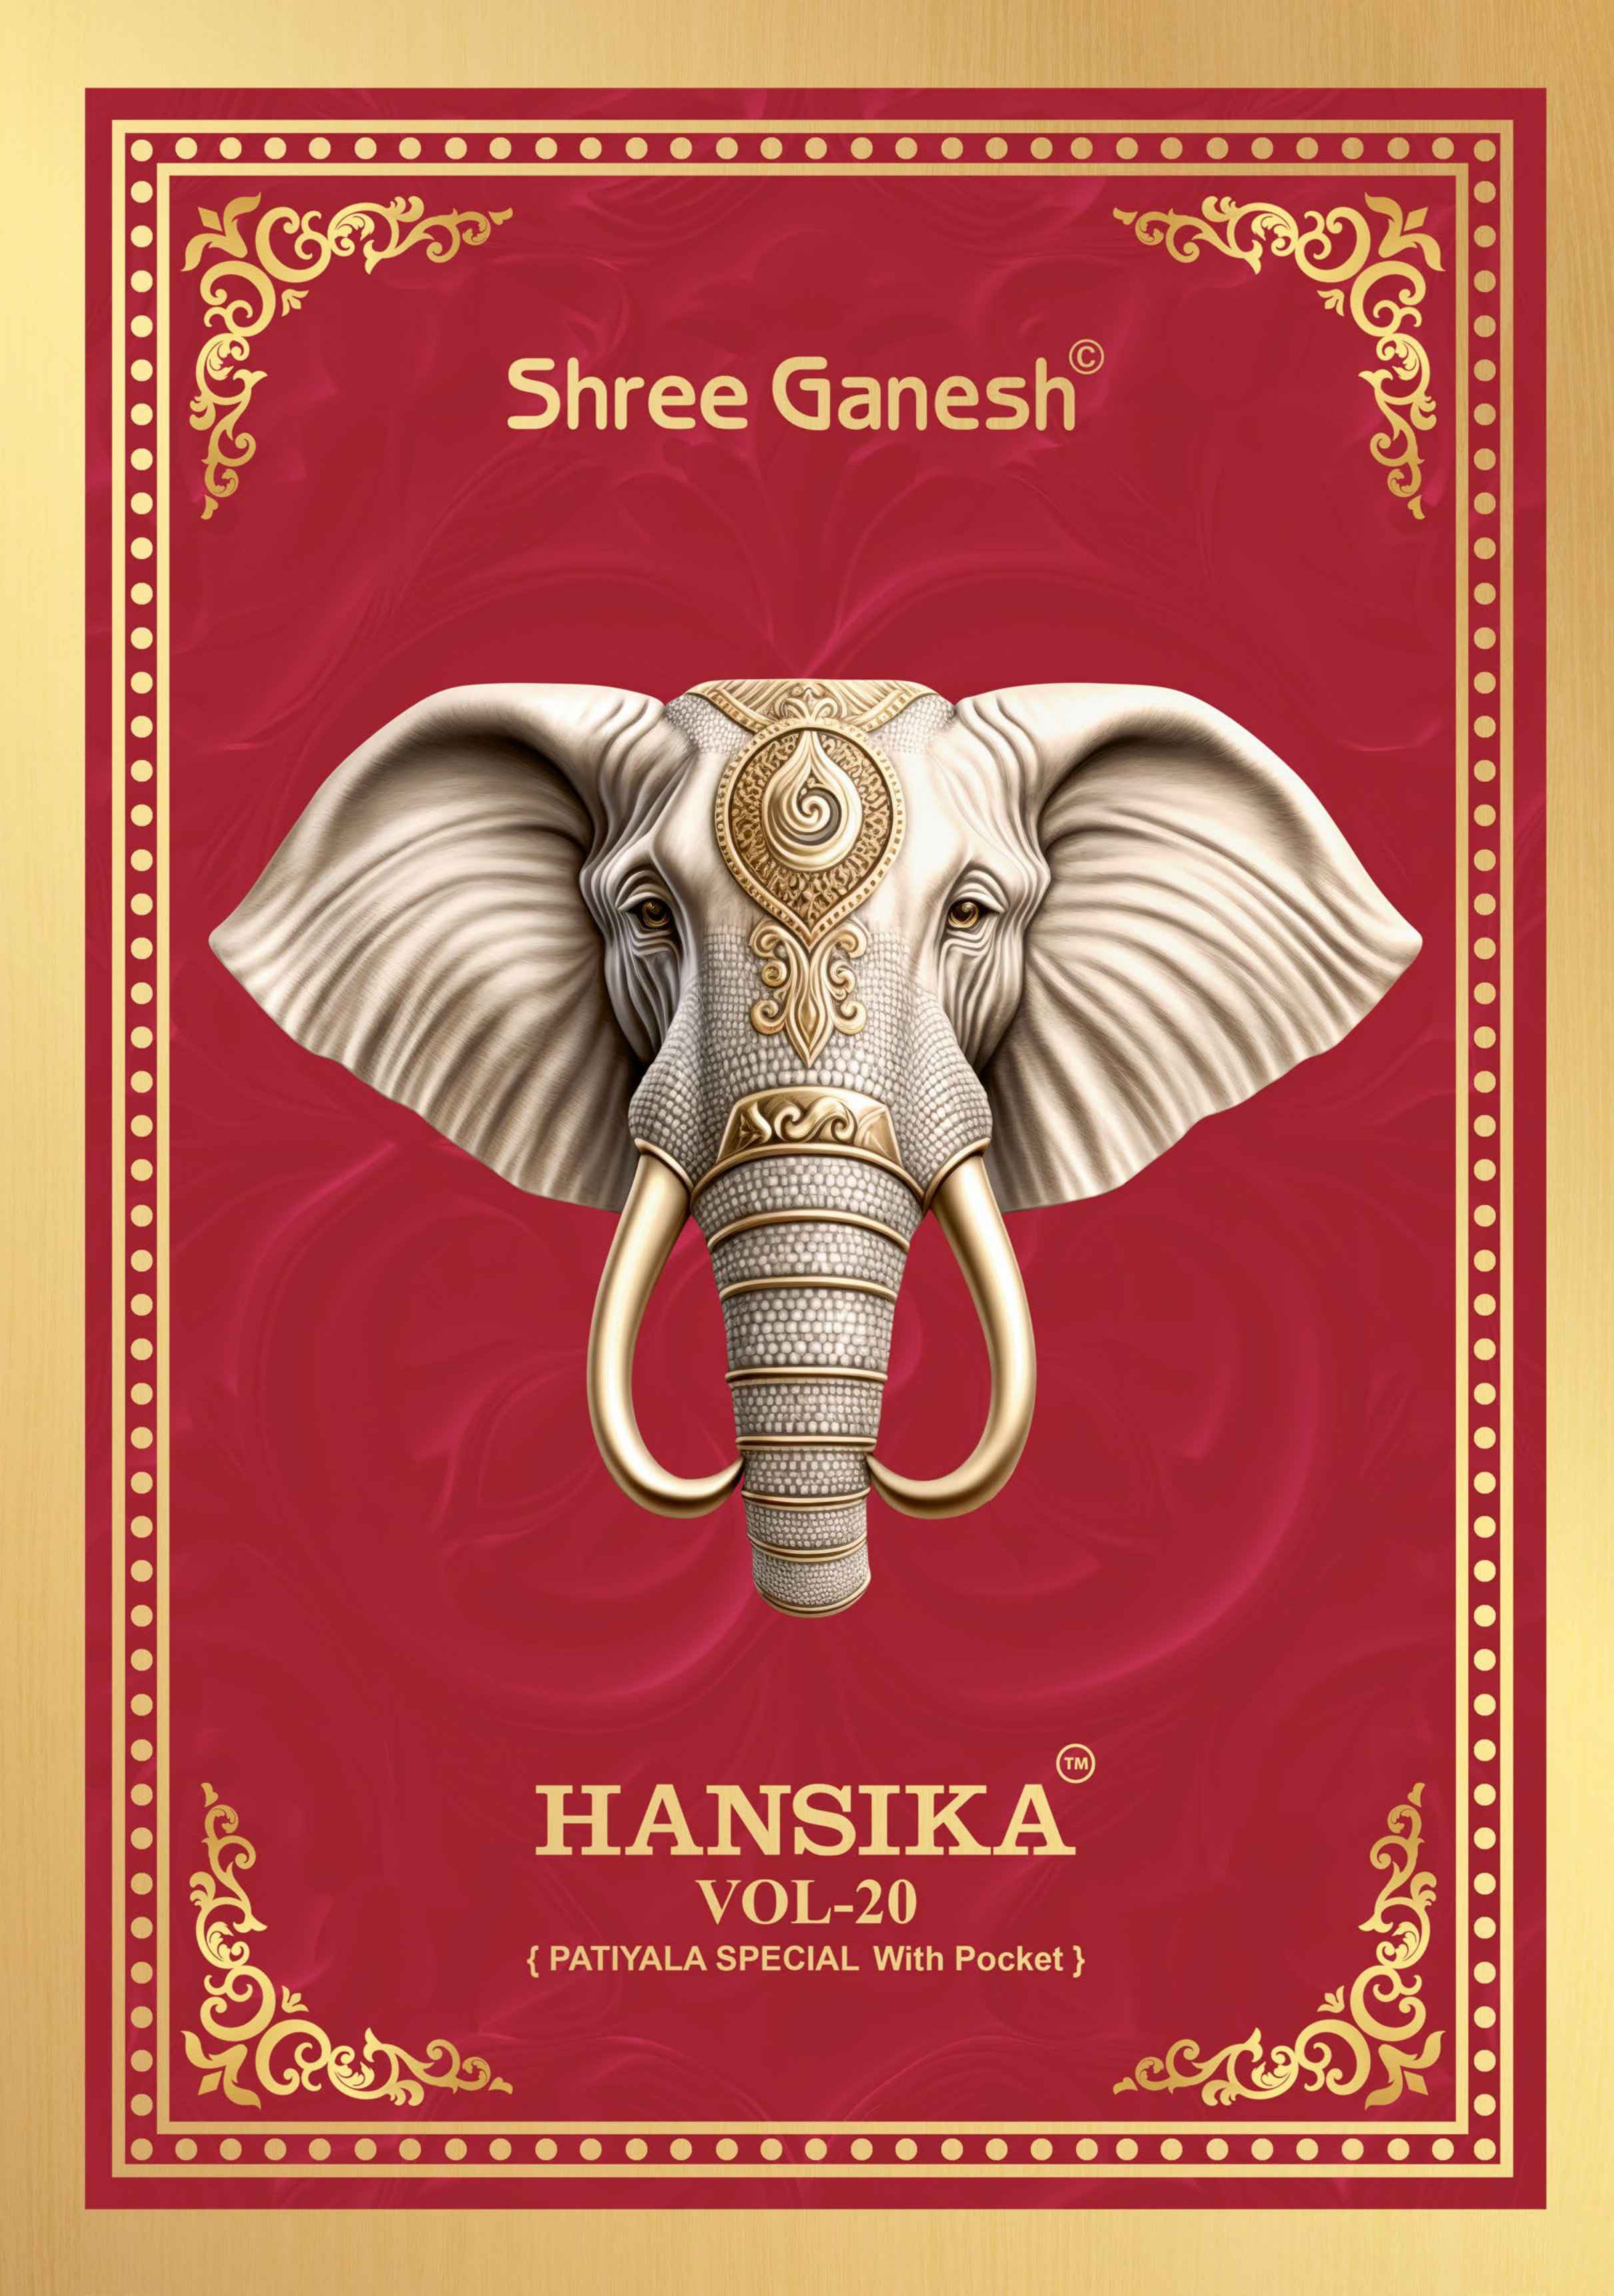 Shree Ganesh Hansika Vol 20 Cotton Dress Material 36 pcs Catalogue